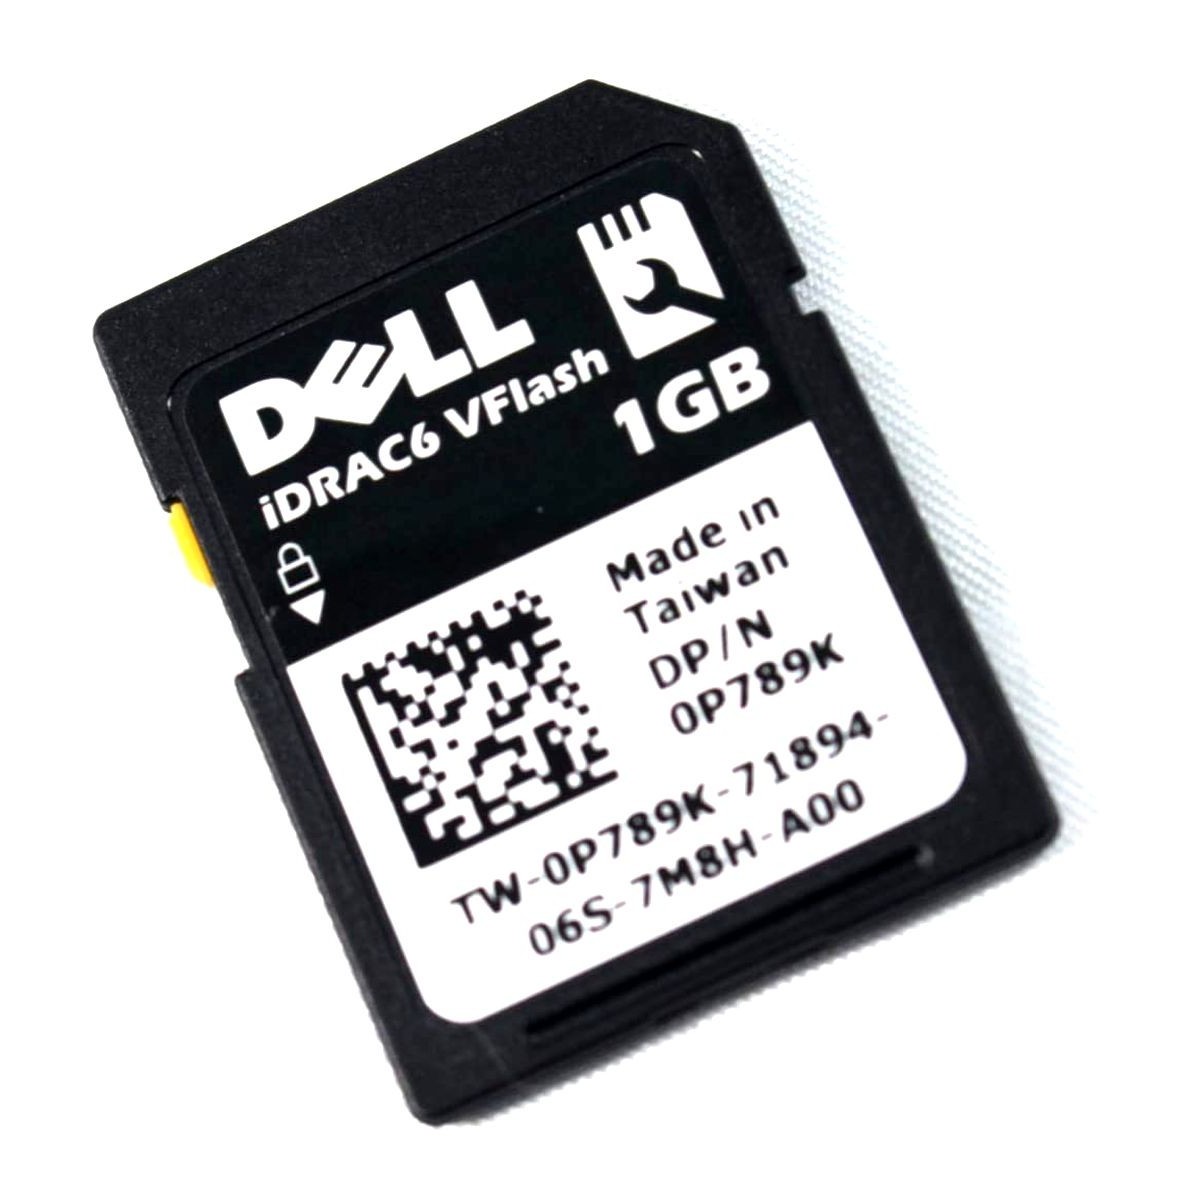 DELL iDRAC 6 vFLASH 1GB 0P789K